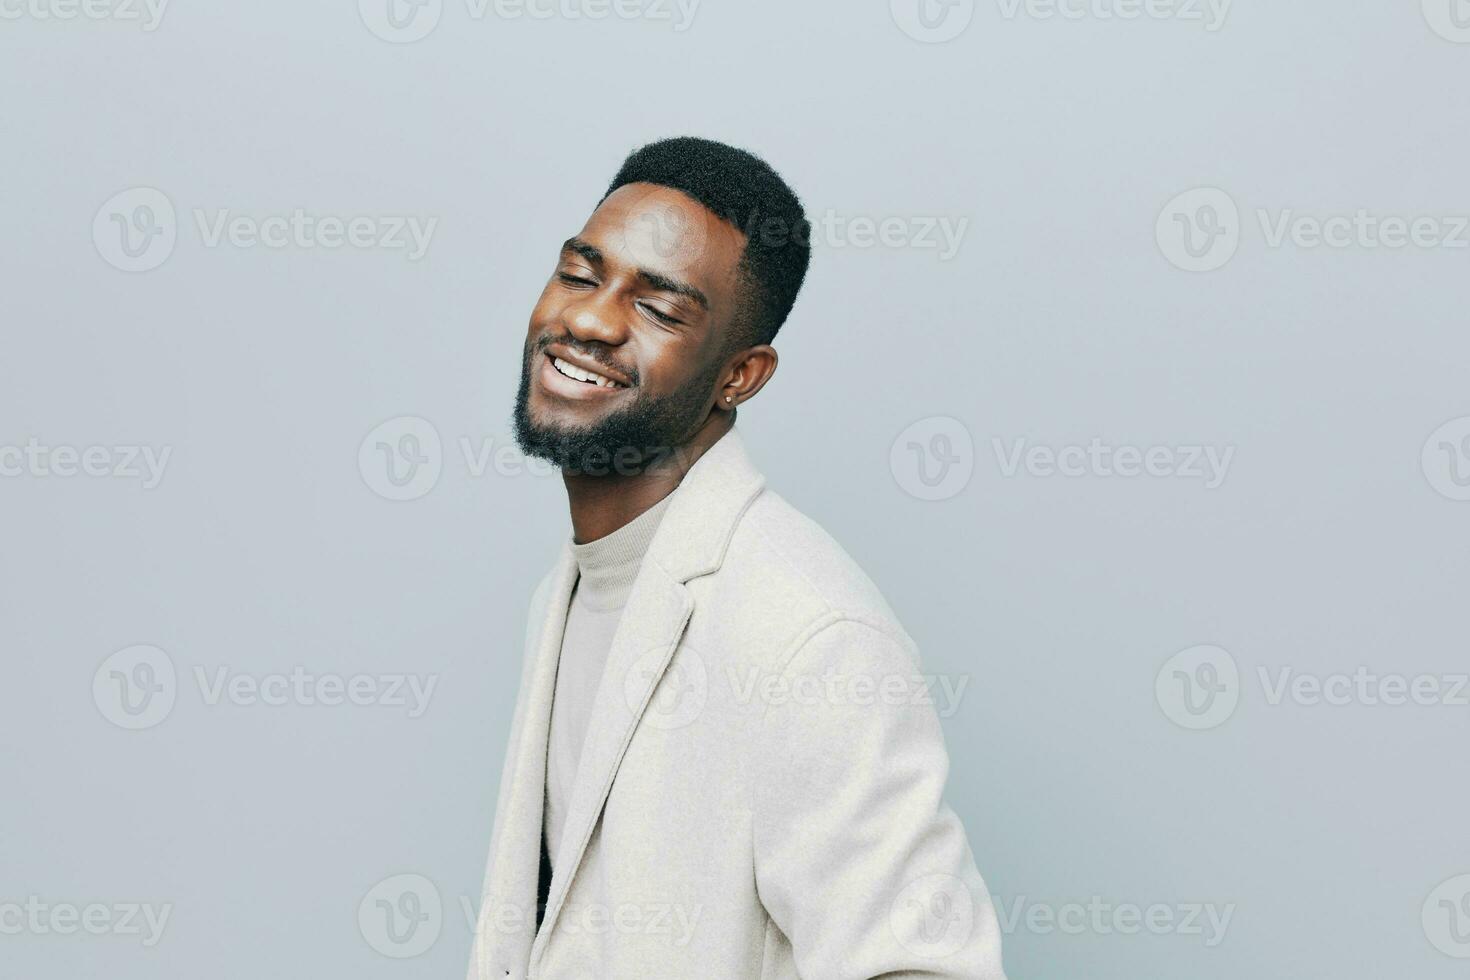 noir homme américain veste sourire sur de soi portrait content Jeune souriant africain émotion photo